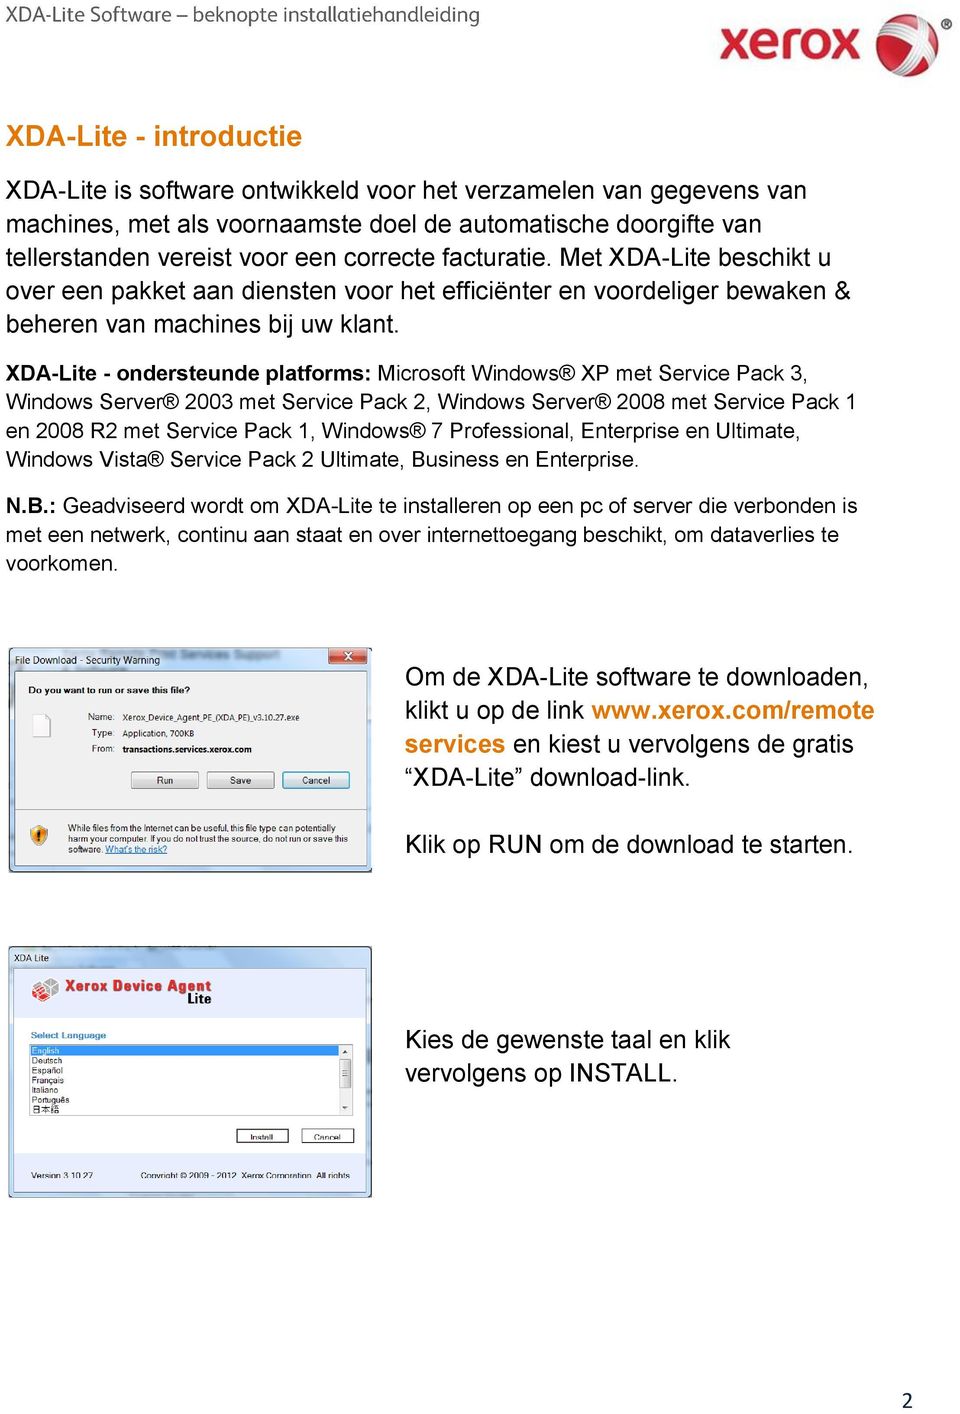 XDA-Lite - ondersteunde platforms: Microsoft Windows XP met Service Pack 3, Windows Server 2003 met Service Pack 2, Windows Server 2008 met Service Pack 1 en 2008 R2 met Service Pack 1, Windows 7